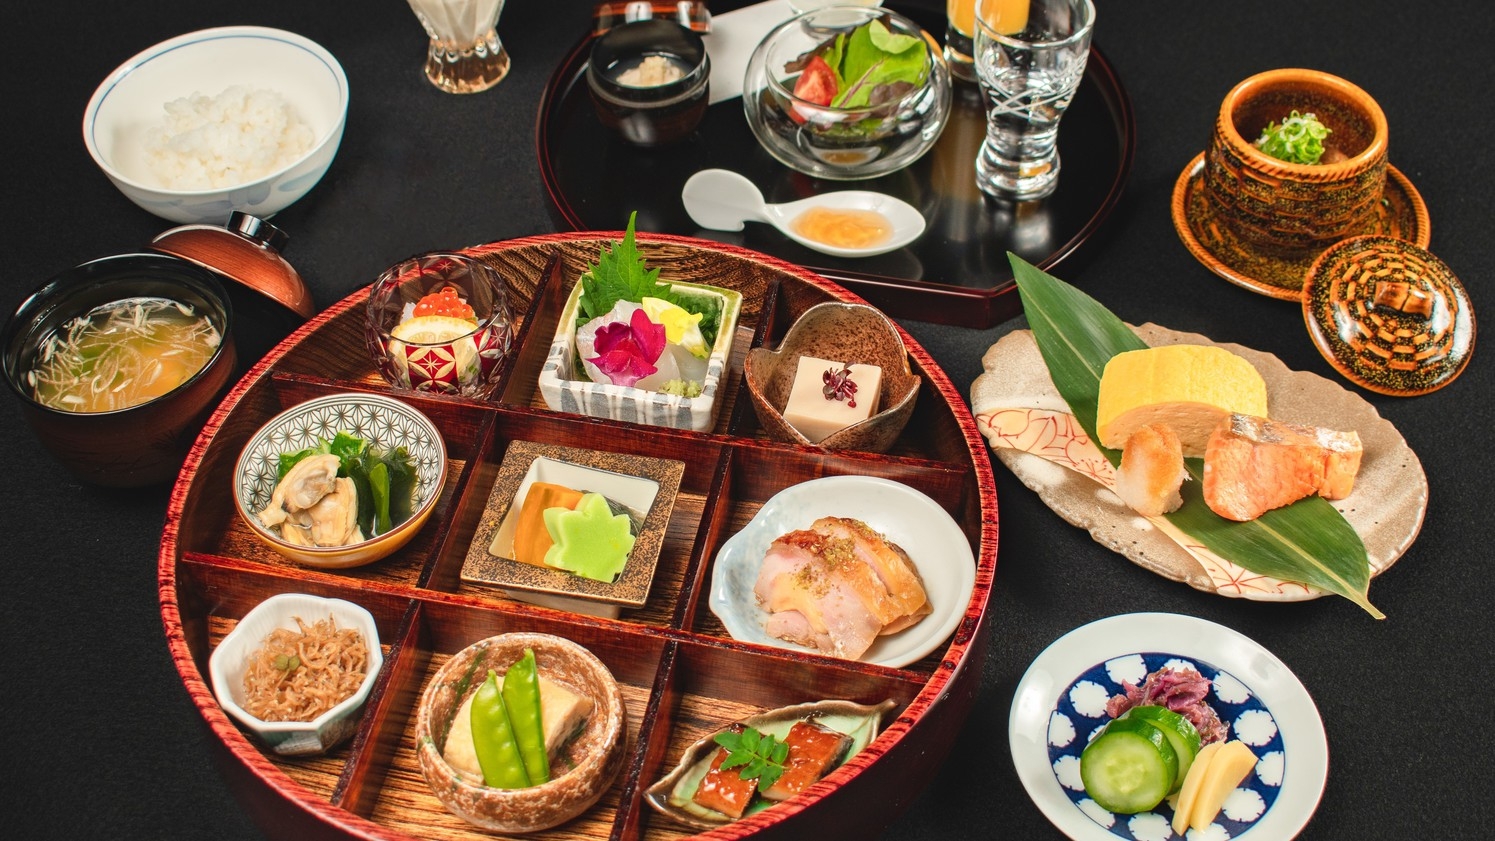 〜四季折々の京料理〜京の朝ごはんを、京懐石のレストランで贅沢に【朝食付き】